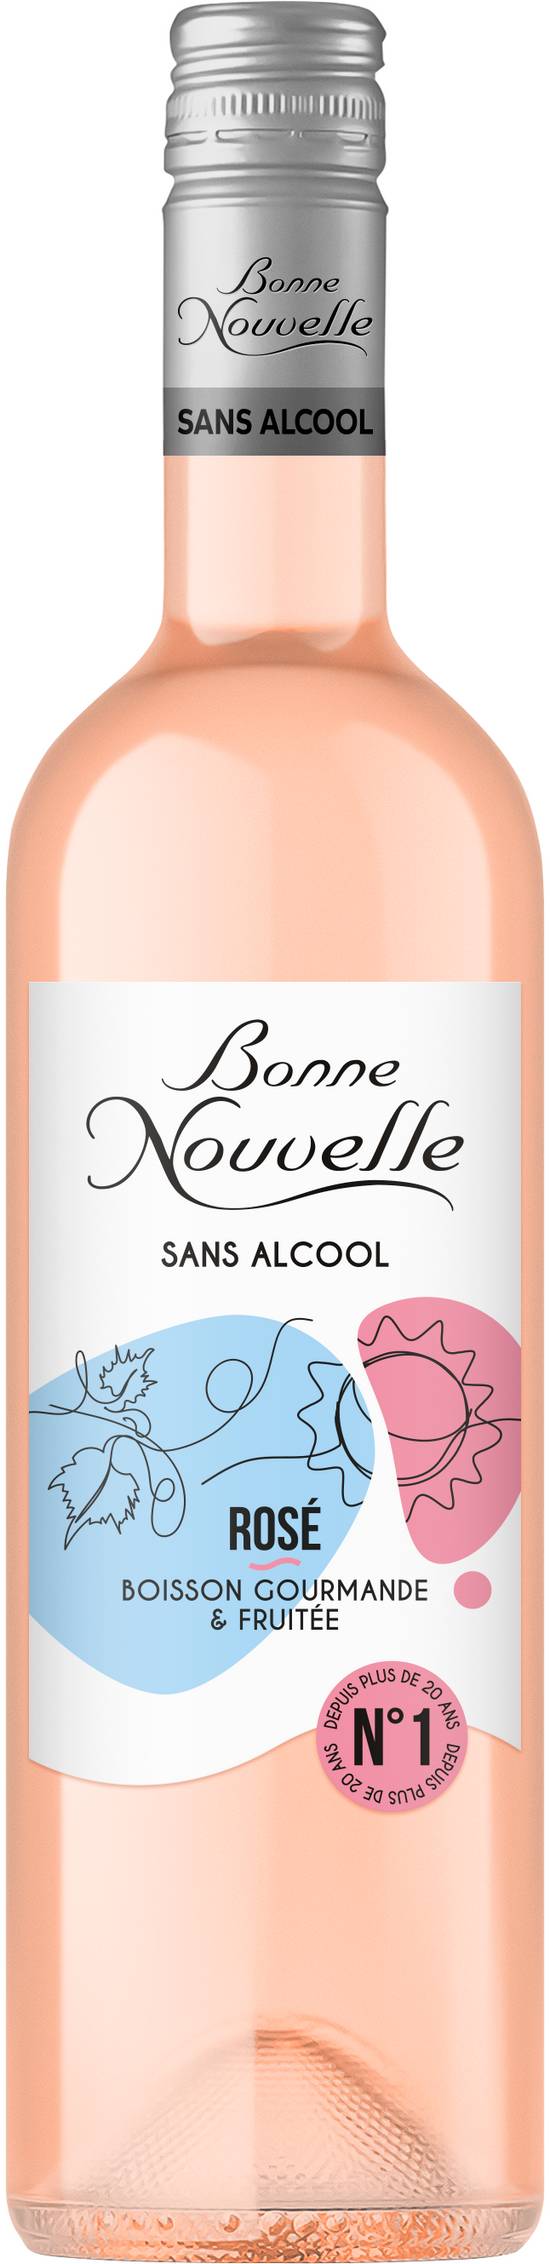 Bonne Nouvelle - Vin rosé sans alcool gourmande et fruité domestique (750 ml)